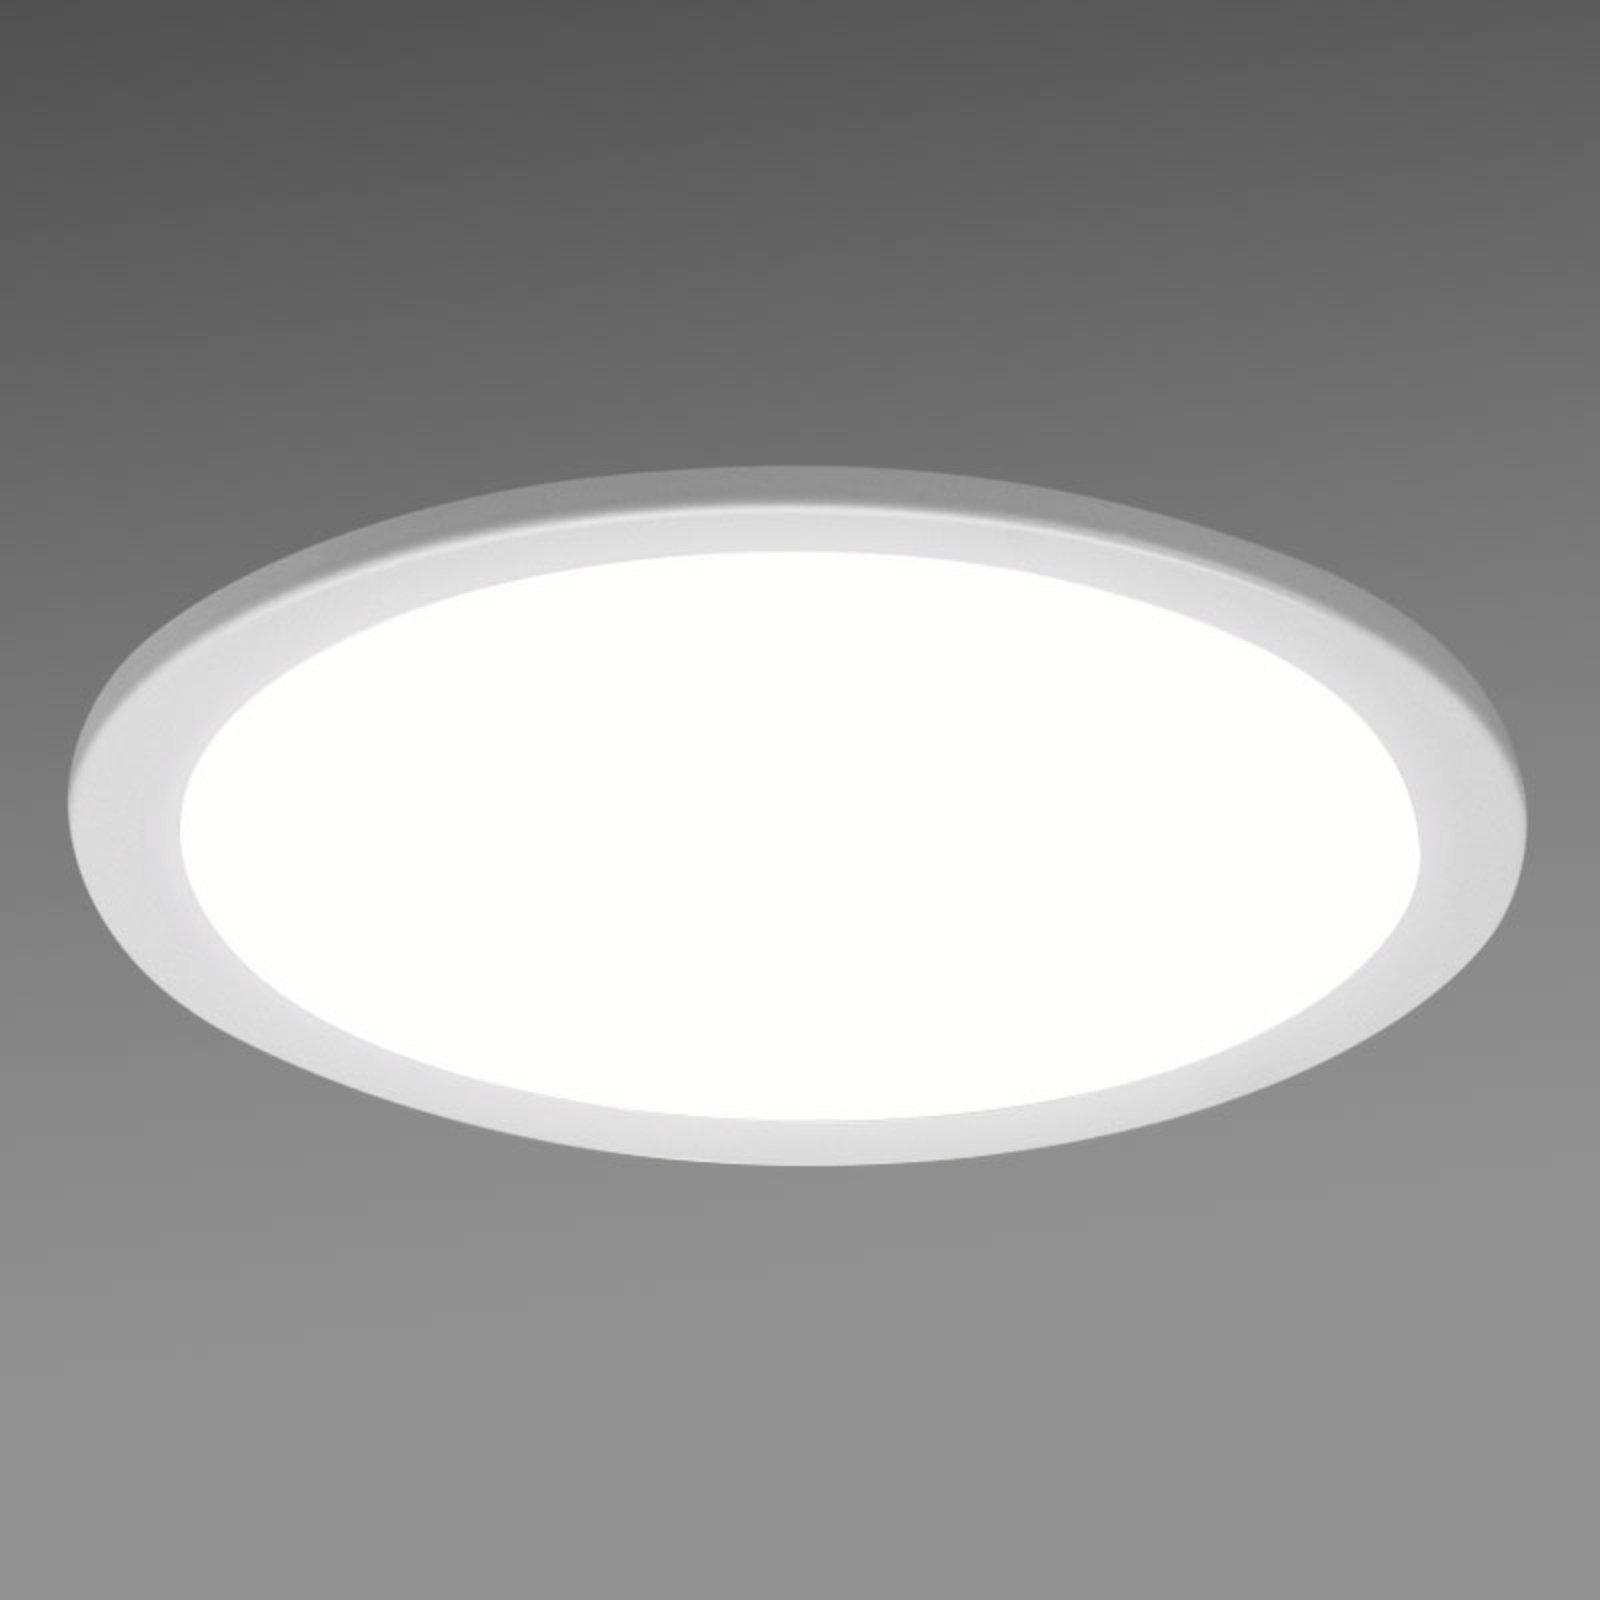 Kerek LED beépíthető downlight SBLG, 4 000 K